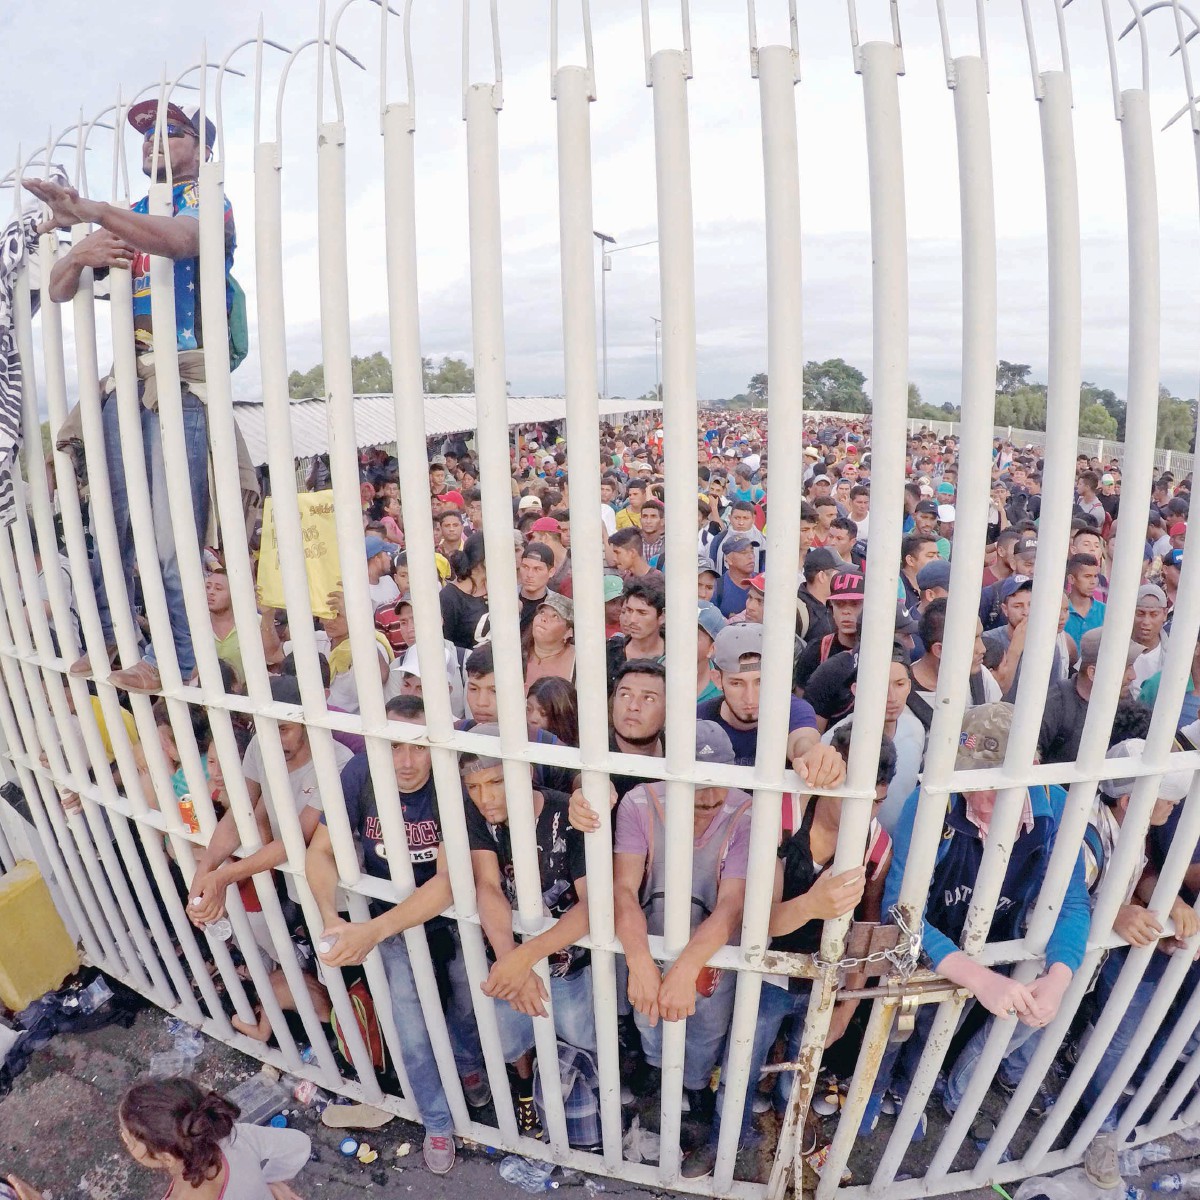 México rebasa a EU en expulsión de migrantes